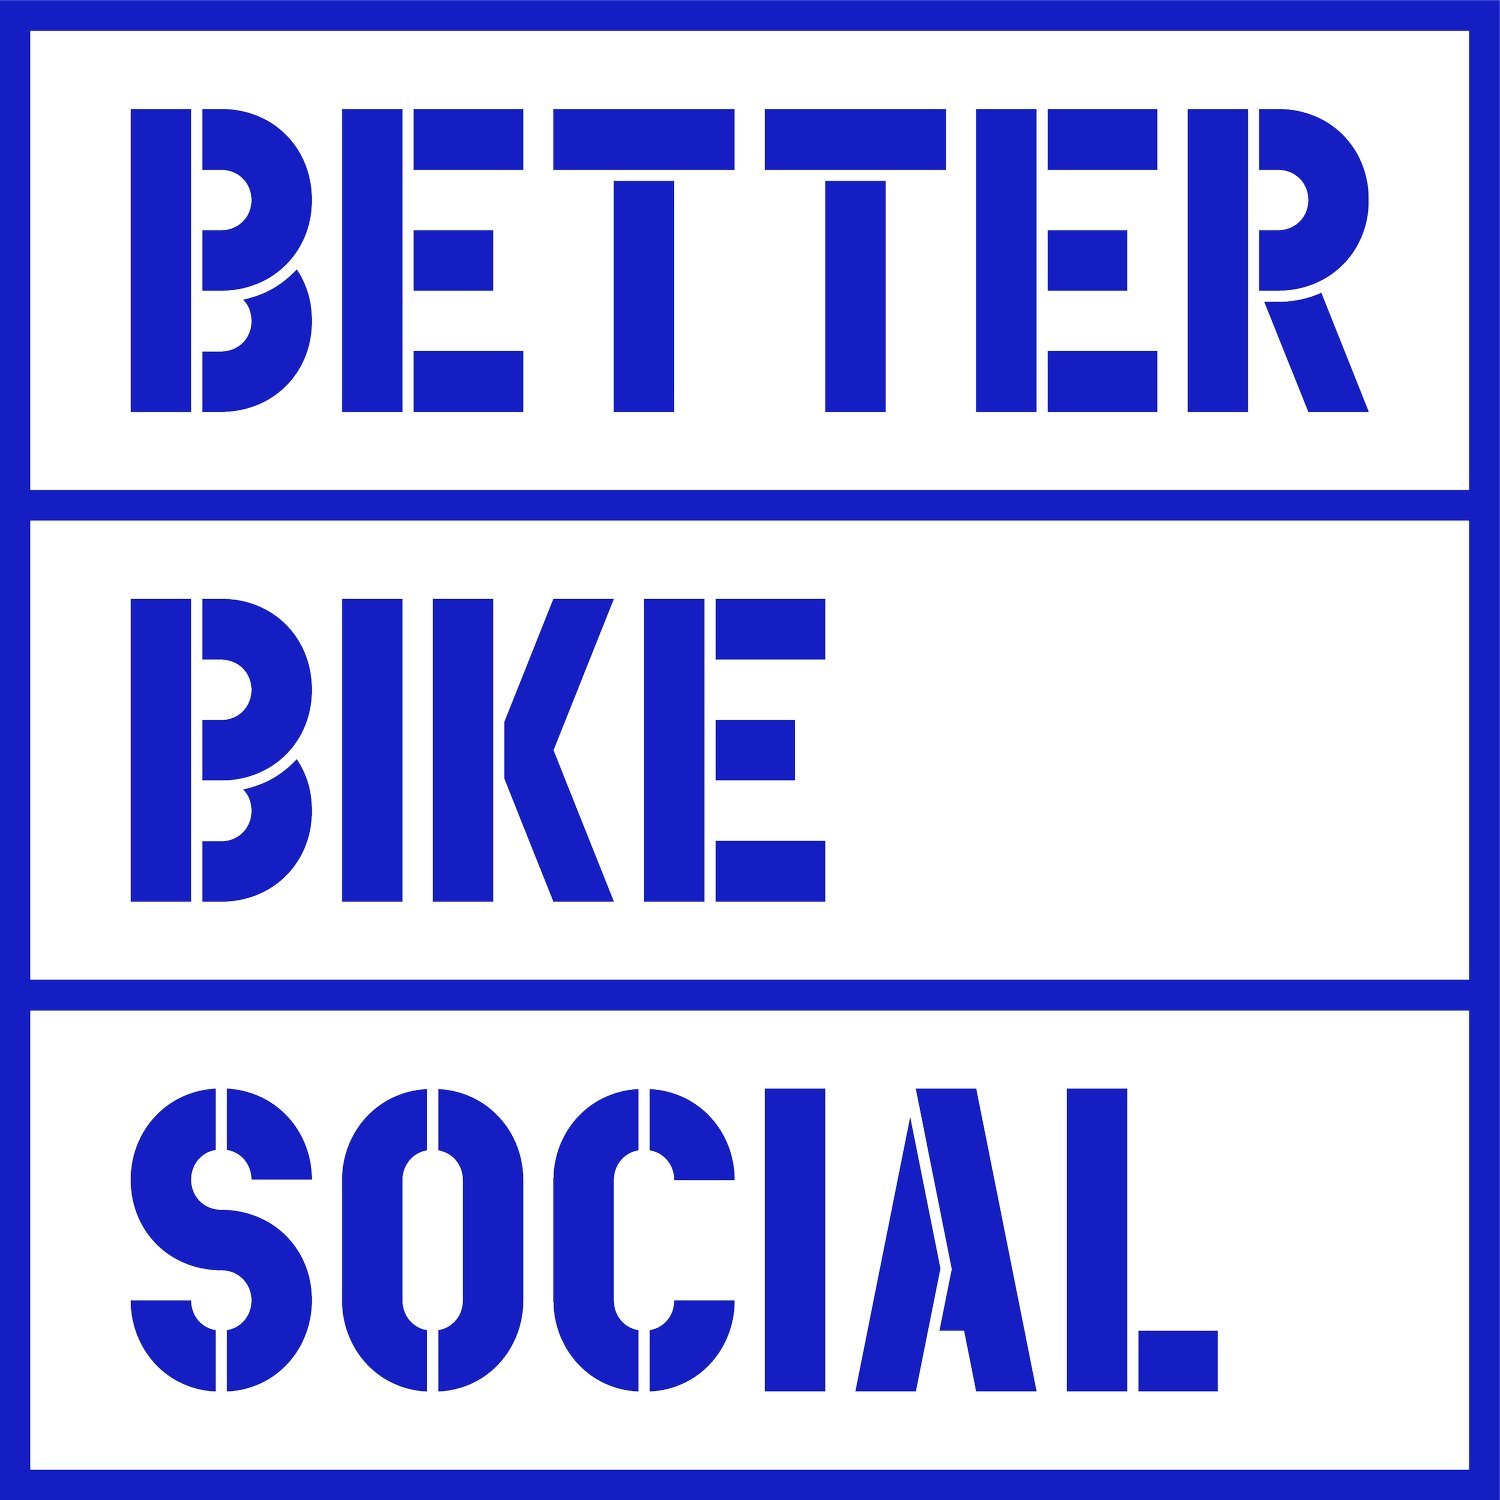 Better Bike Social